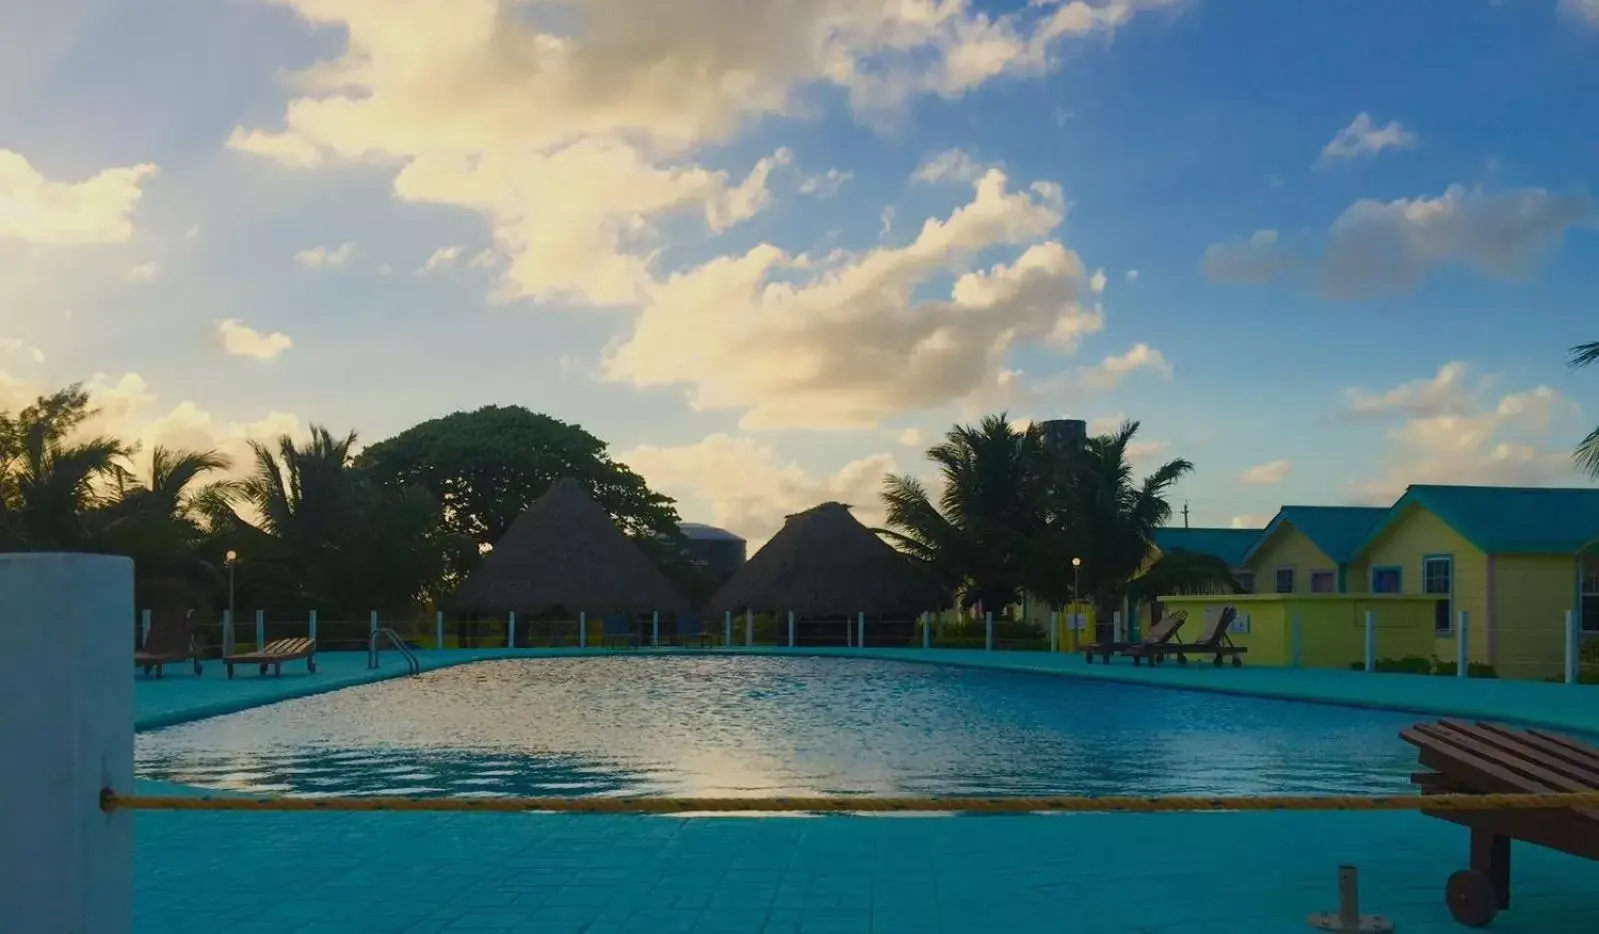 Pool view, Swimming Pool in Royal Caribbean Resort